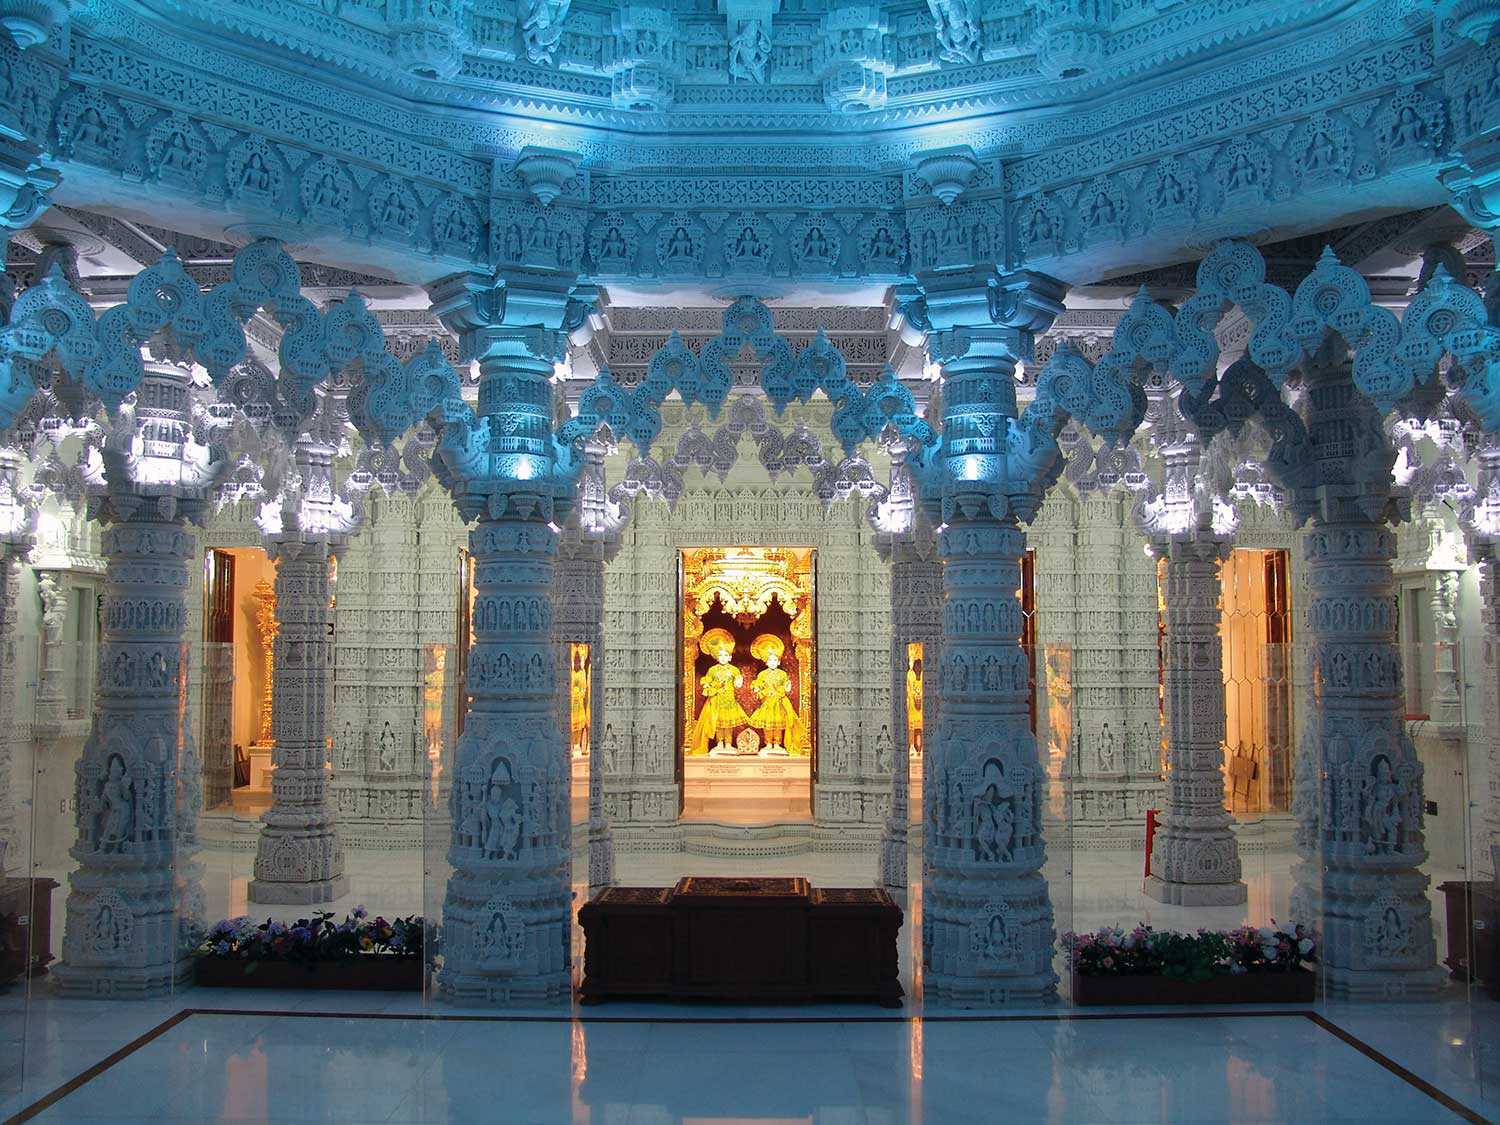 Inside the BAPS Shri Swaminarayan Mandir (Photo courtesy of BAPS Shri Swaminarayan Mandir)